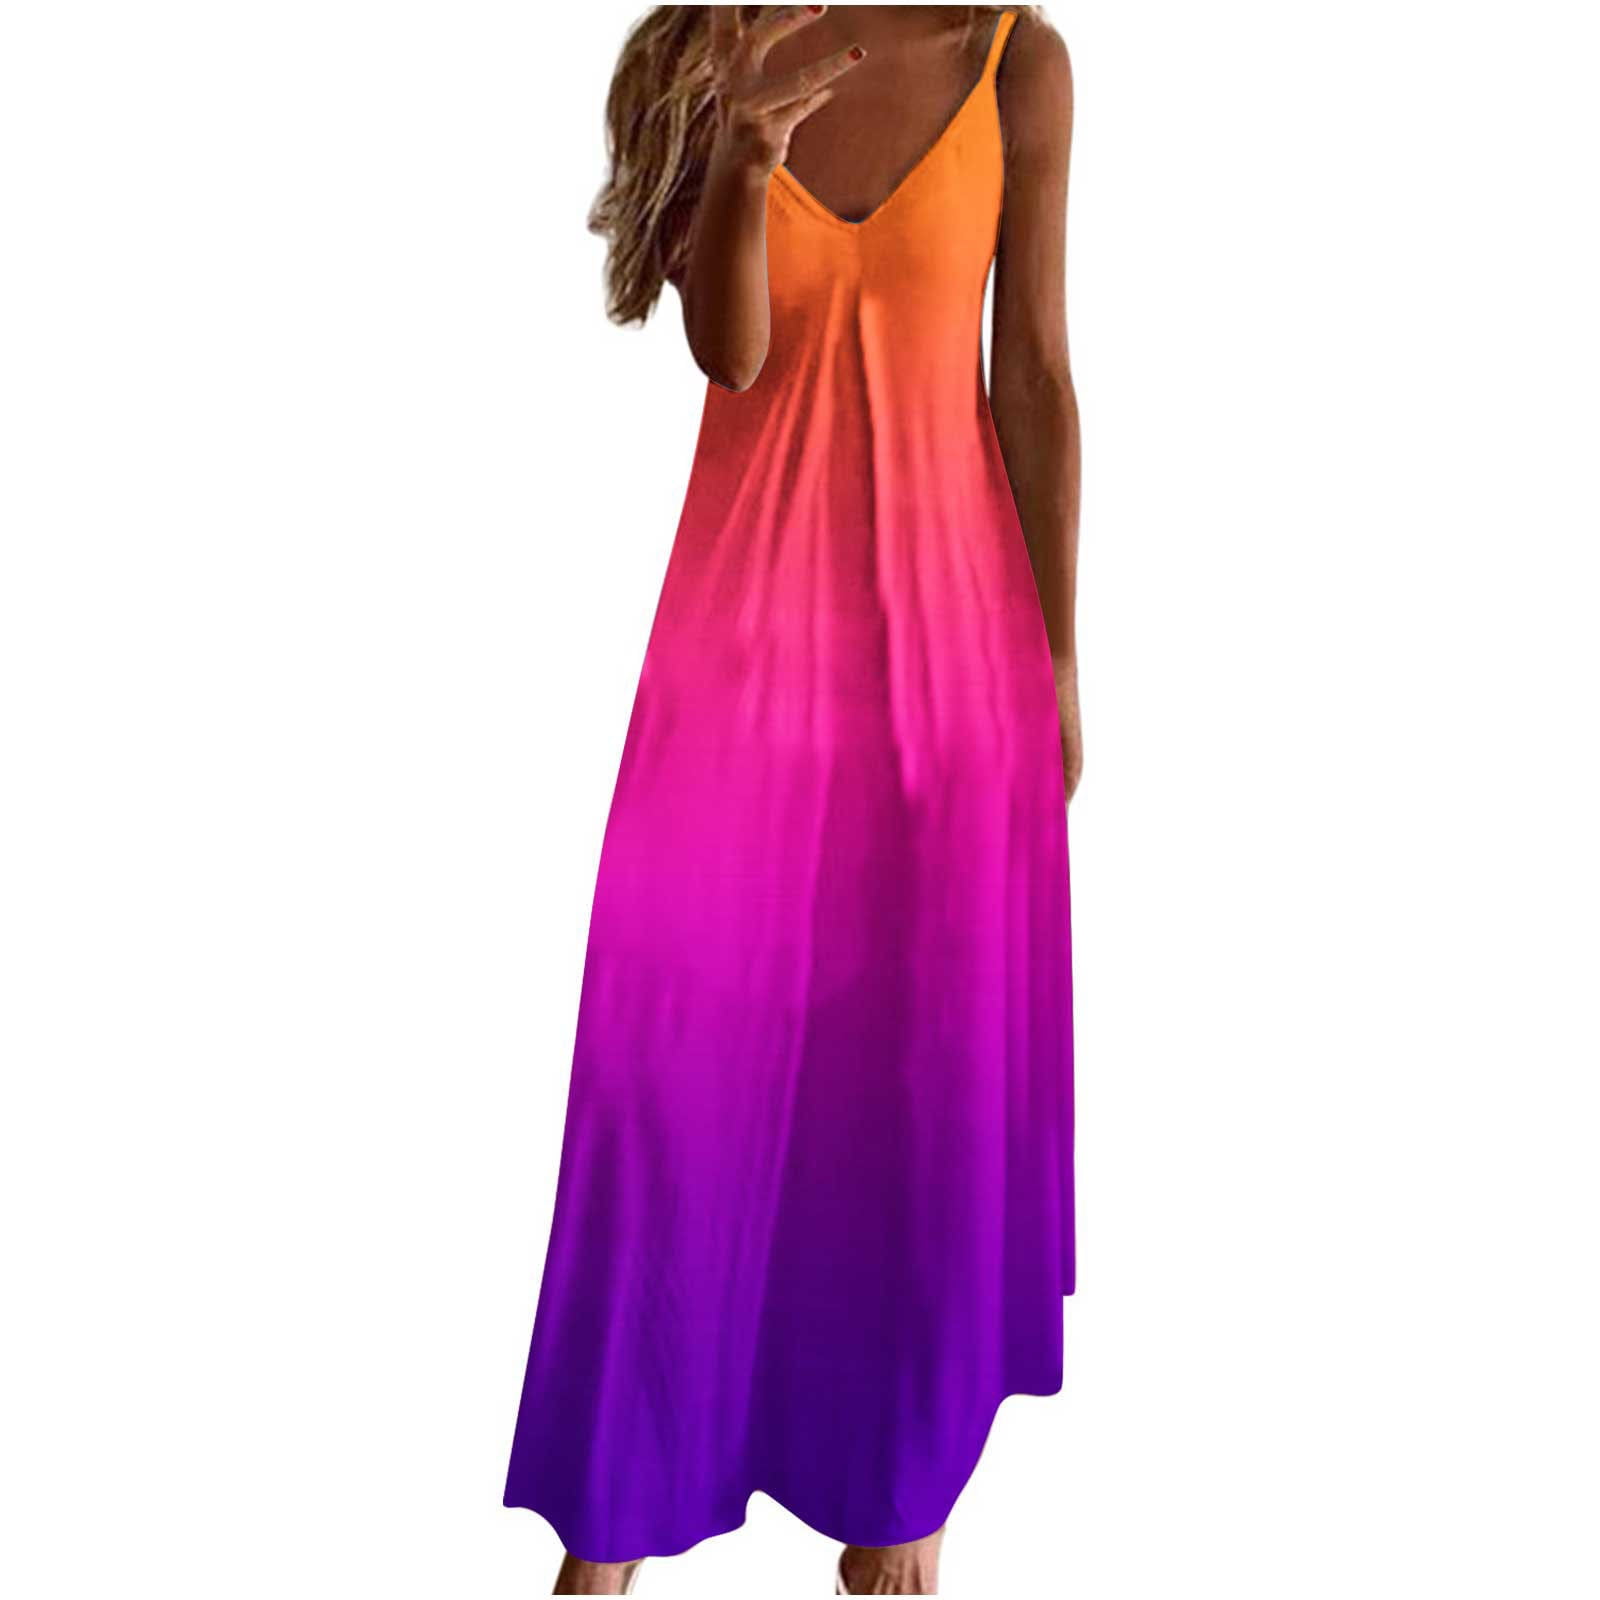 Casual Summer Dresses For Women Sleeveless Dress Beach Sundresses For ...